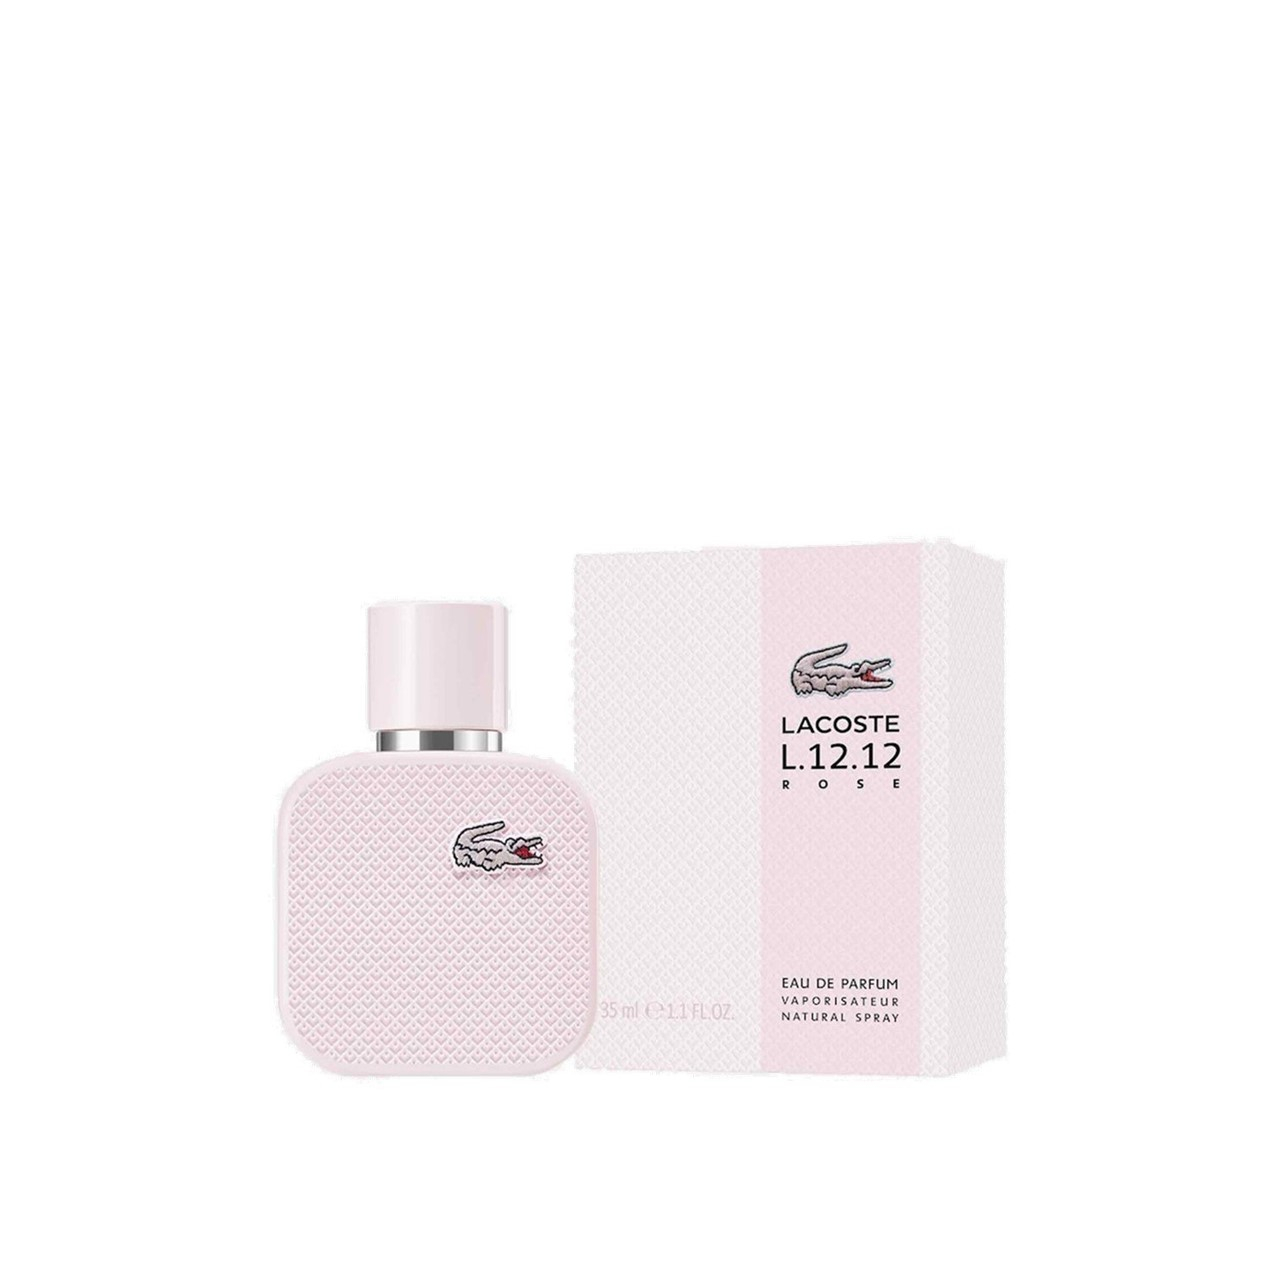 Lacoste L.12.12 Rose Eau de Parfum Pour Femme 35ml (1.2fl oz)